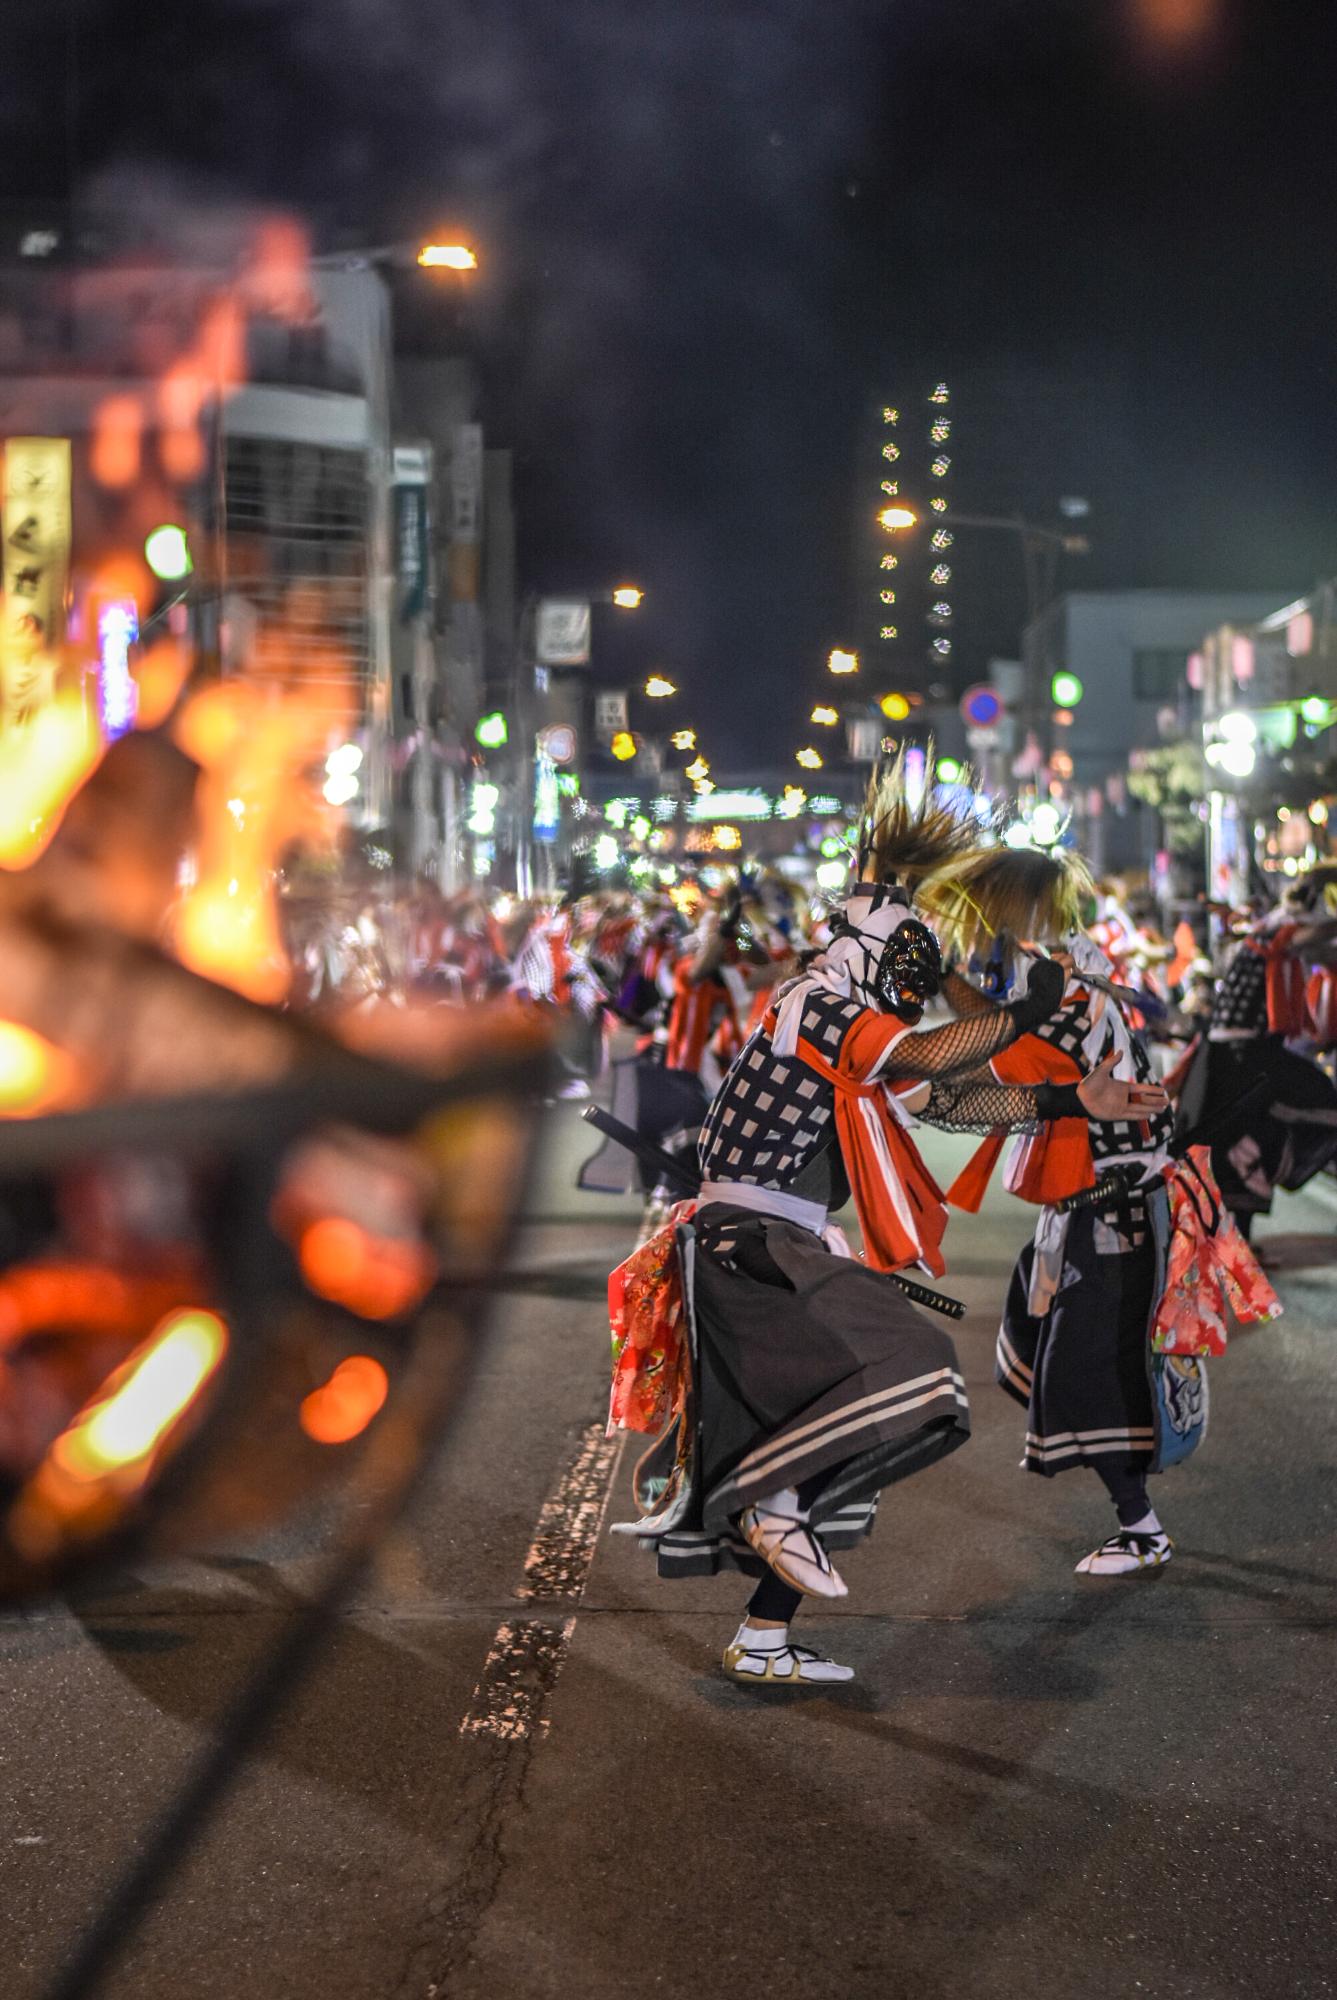 北上市の周辺に伝わる民俗芸能「鬼剣舞」。
正式には「念仏剣舞」の一つですが、威嚇的な鬼のような面（仏の化身）をつけ勇壮に踊るところから「鬼剣舞」と呼ばれ、親しまれています。

民俗芸能の宝庫とも言われ、伝承活動をしている民俗芸能団体数は日本有数です。
８月の 第一金曜から三日間開催される「北上・みちのく芸能まつり」では、街のあちこちで１００を越す民俗芸能が披露されます。